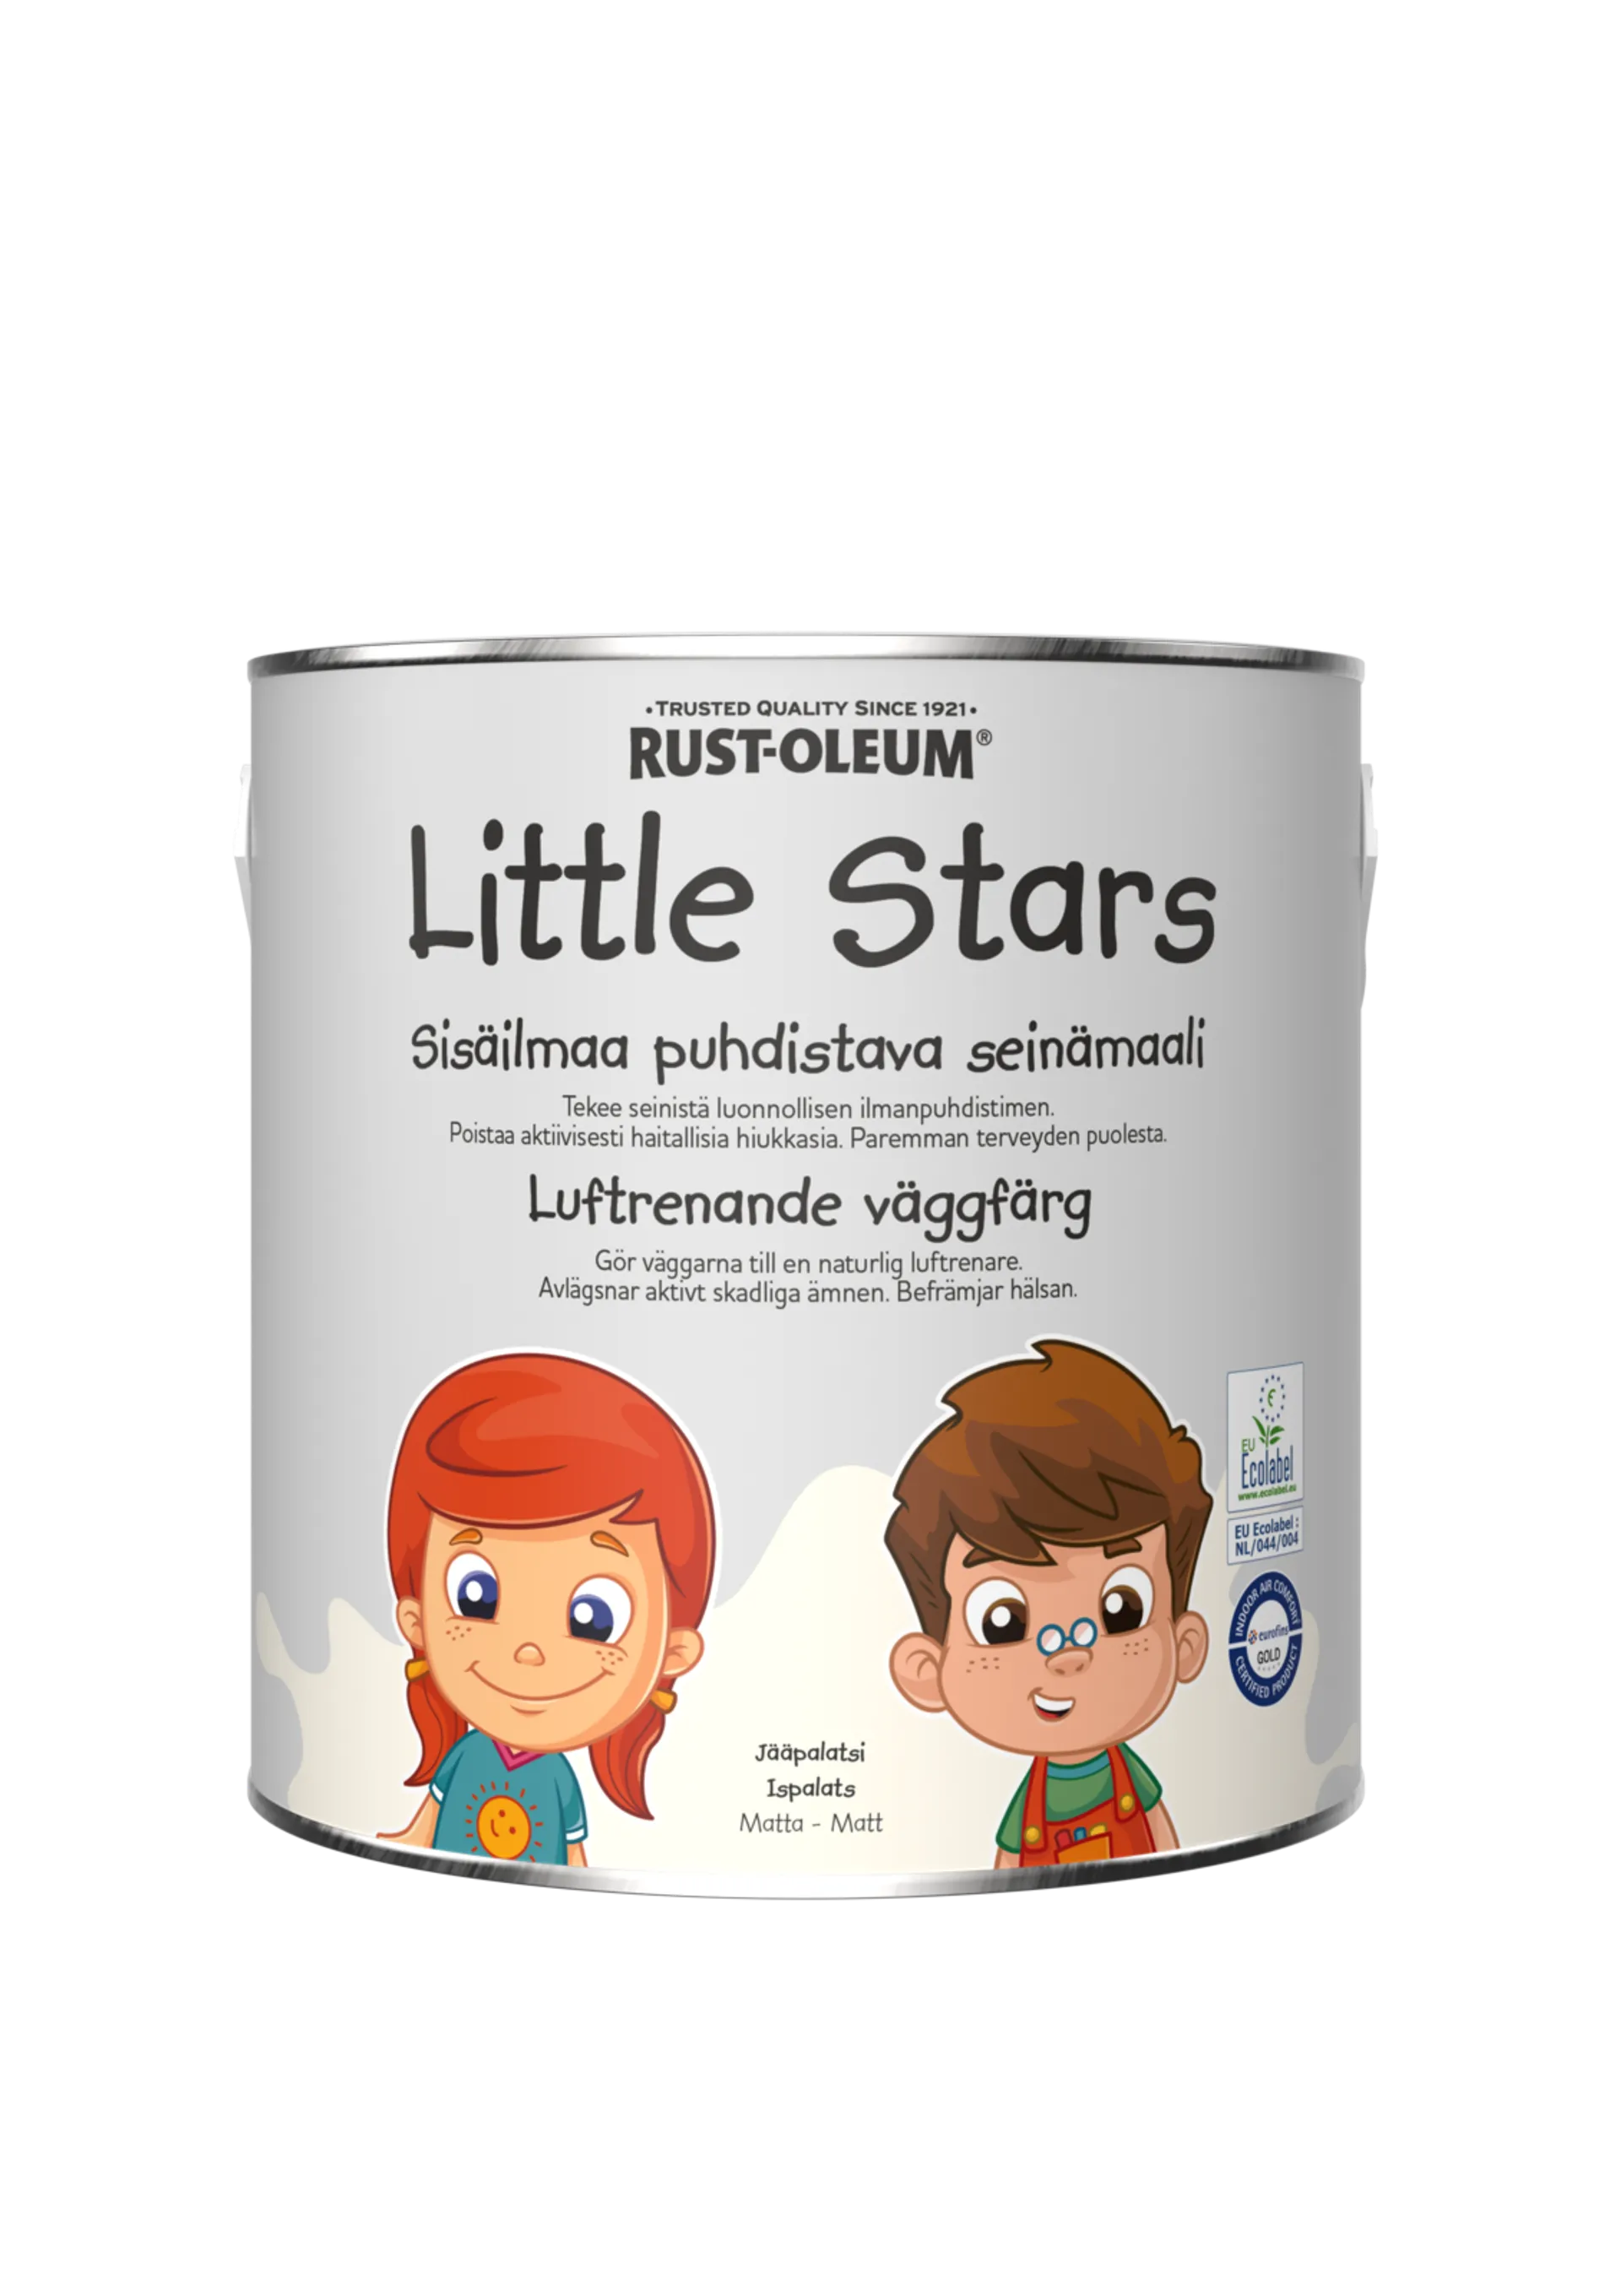 Rust-Oleum Little Stars Sisäilmaa puhdistava Seinämaali 2,5L Jääpalatsi